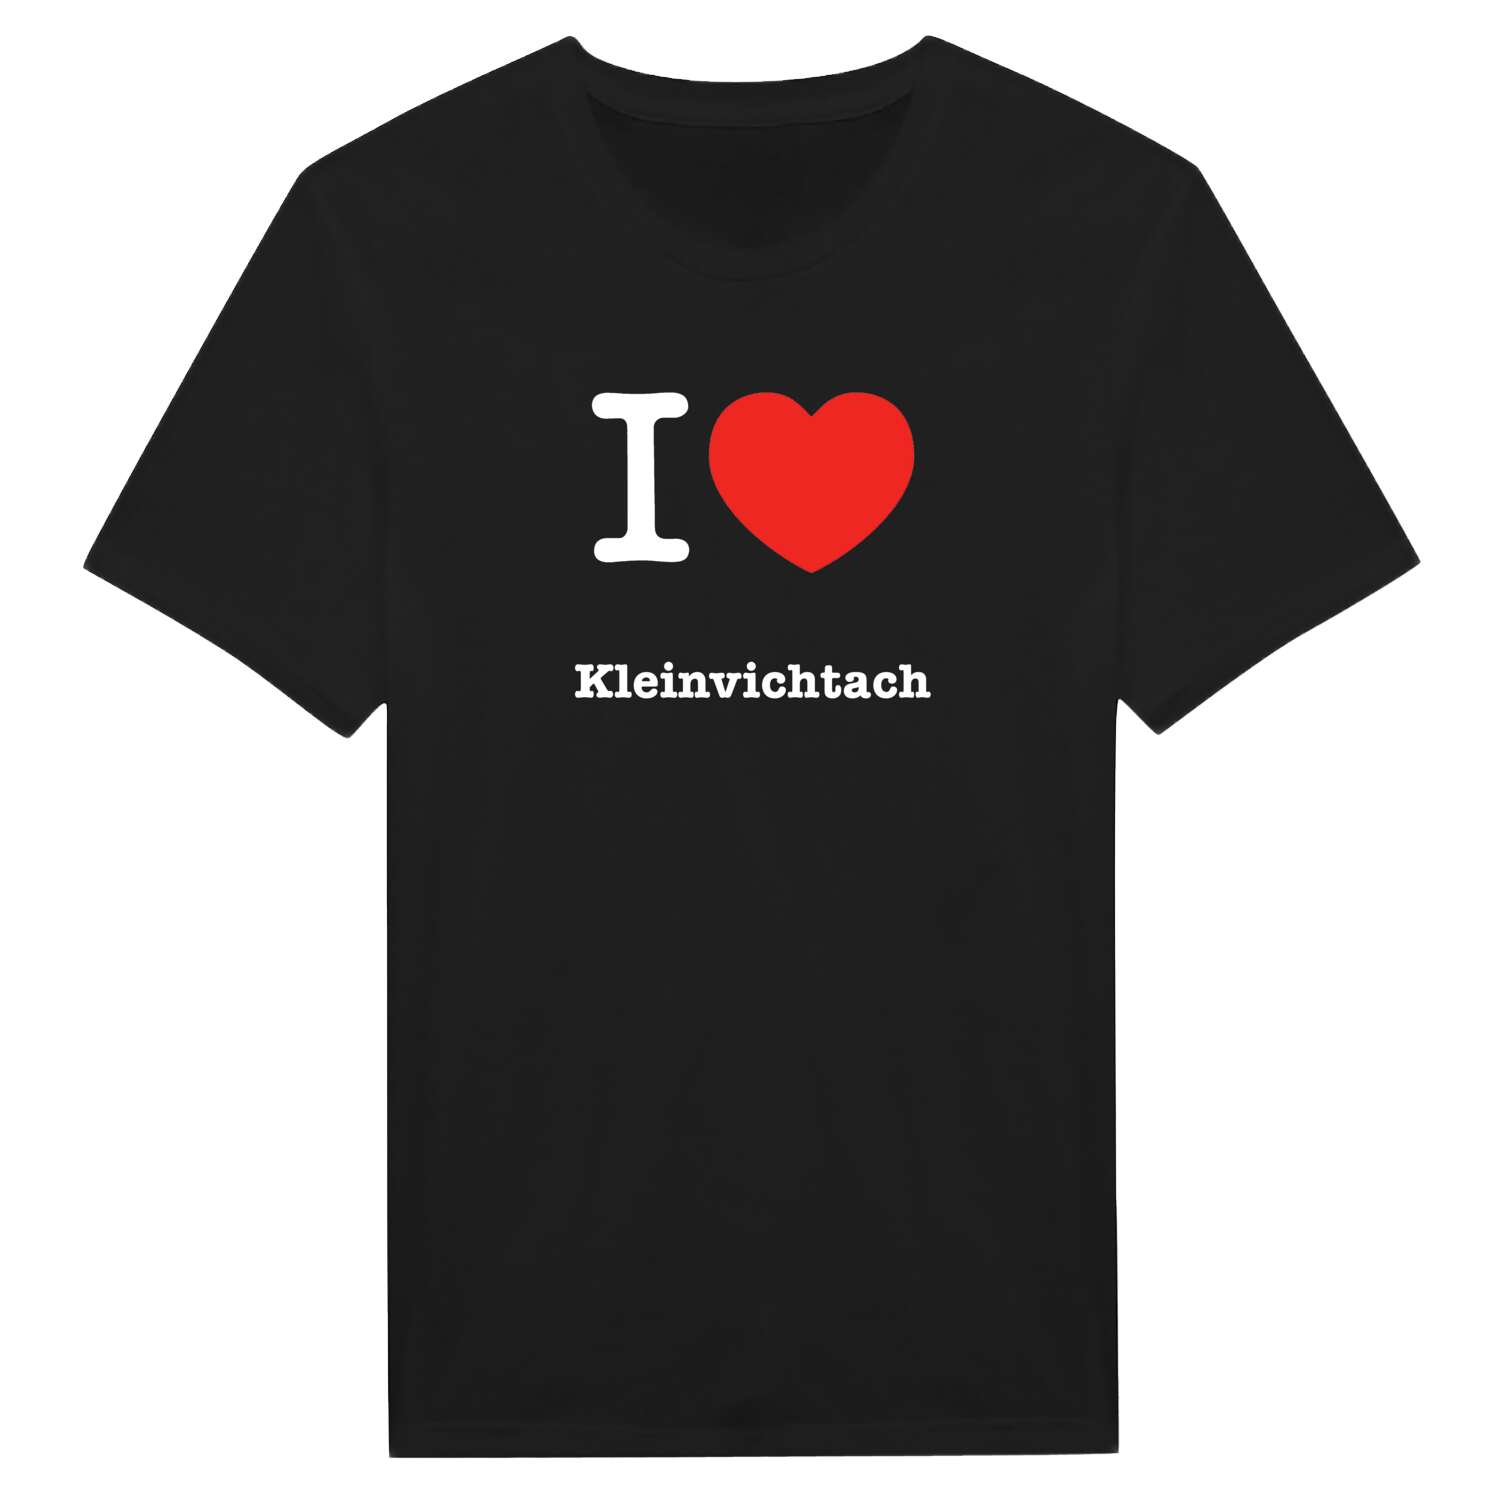 Kleinvichtach T-Shirt »I love«